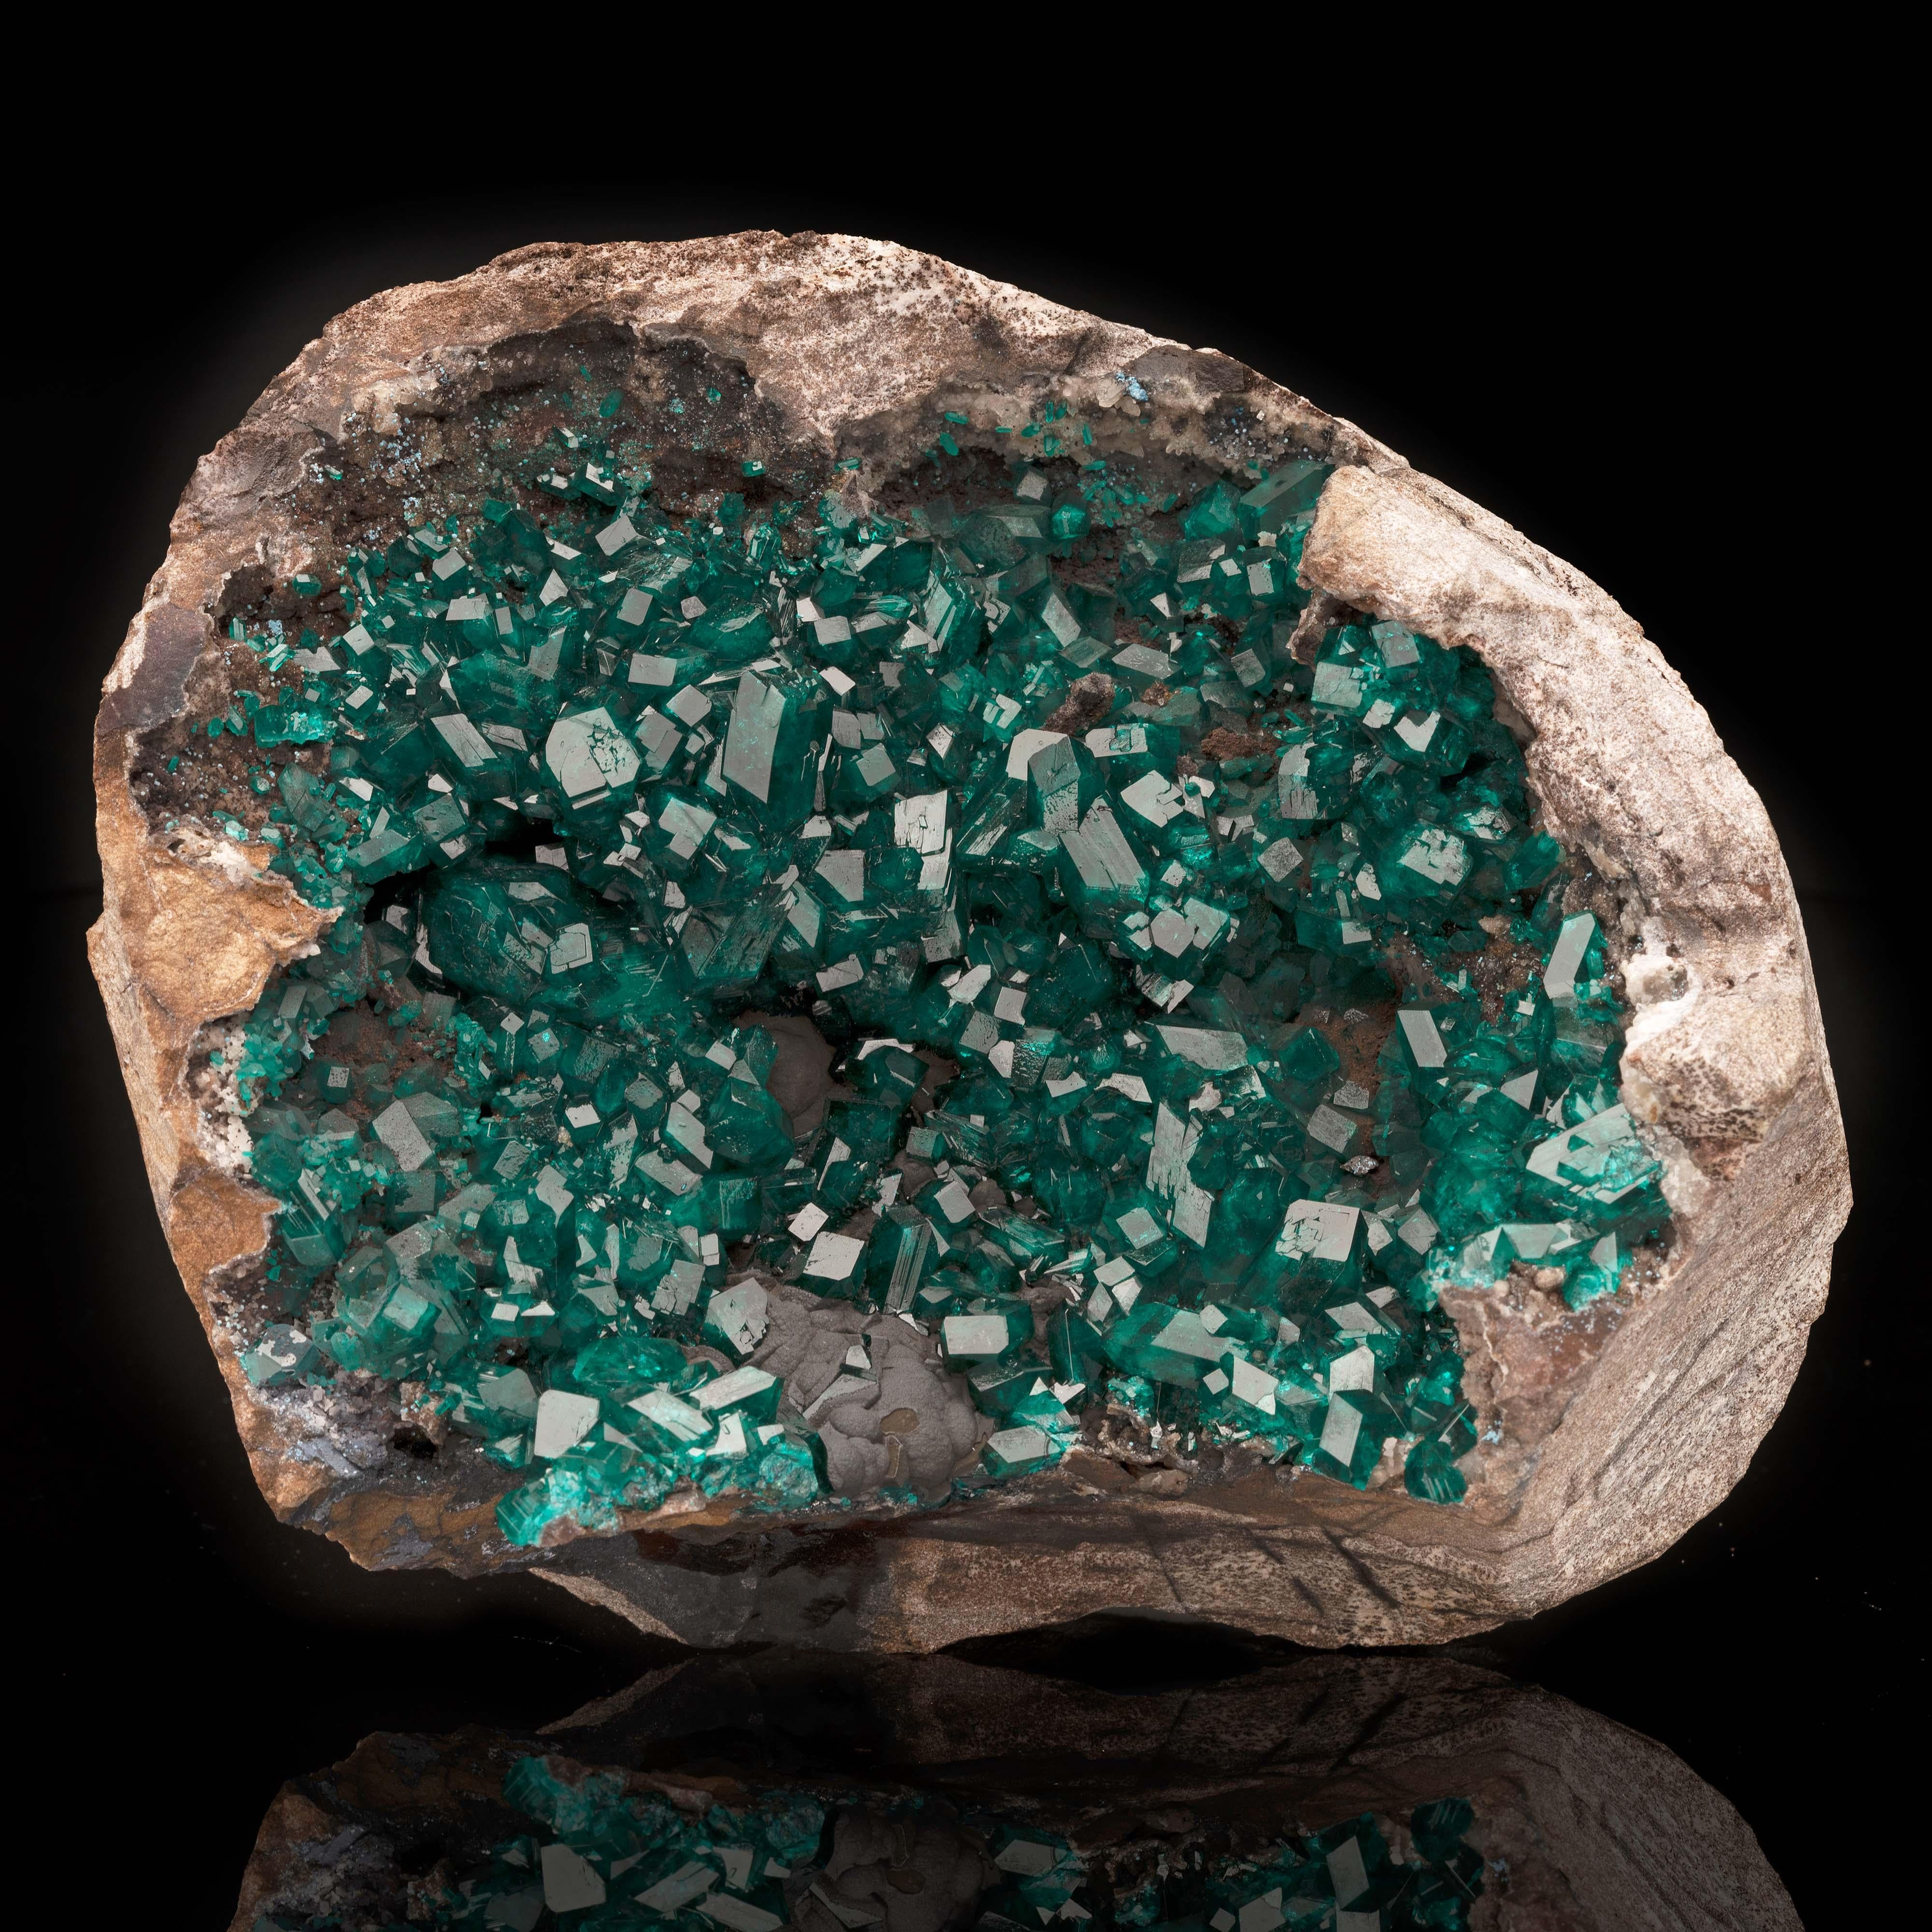 Provenant de la RDC - l'un des deux seuls endroits au monde où l'on peut trouver ce cristal rare et convoité de couleur vert émeraude à bleu-vert, l'autre étant la Namibie - ce vug - un trou naturel où se forment les cristaux - est rempli de